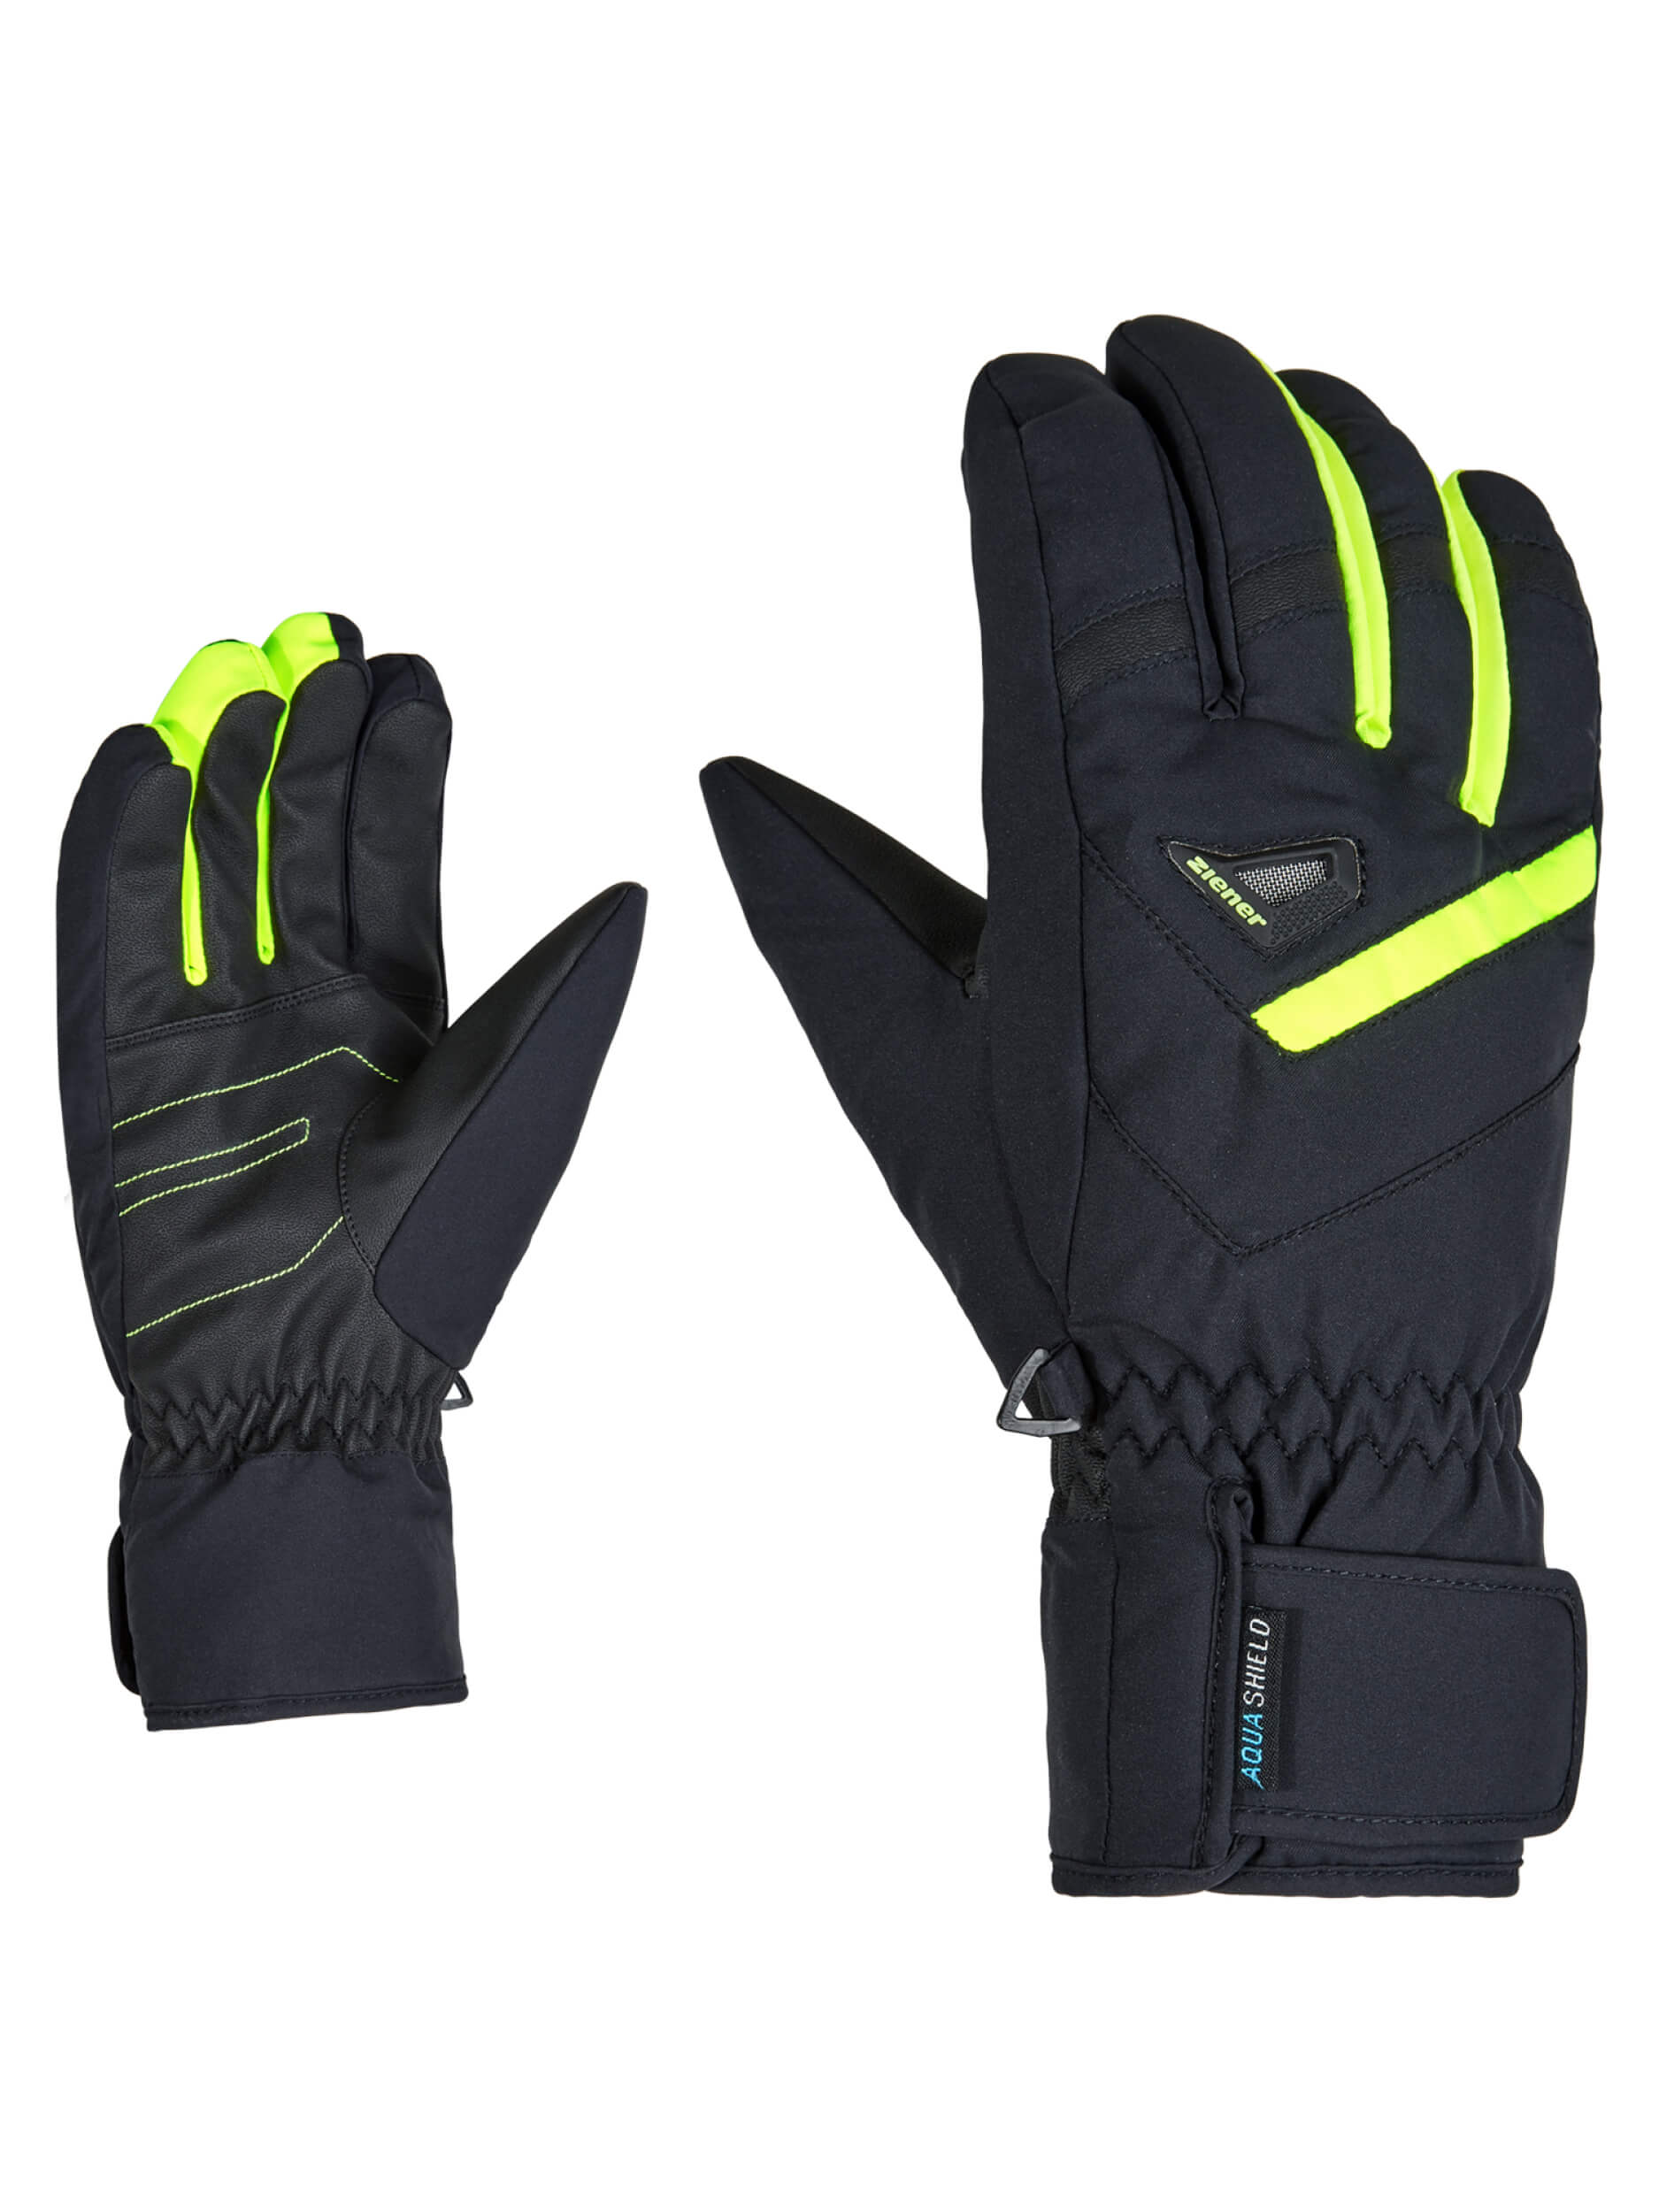 ZIENER Ski-Handschuhe Gary AQUASHIELD schwarz gelb 12737